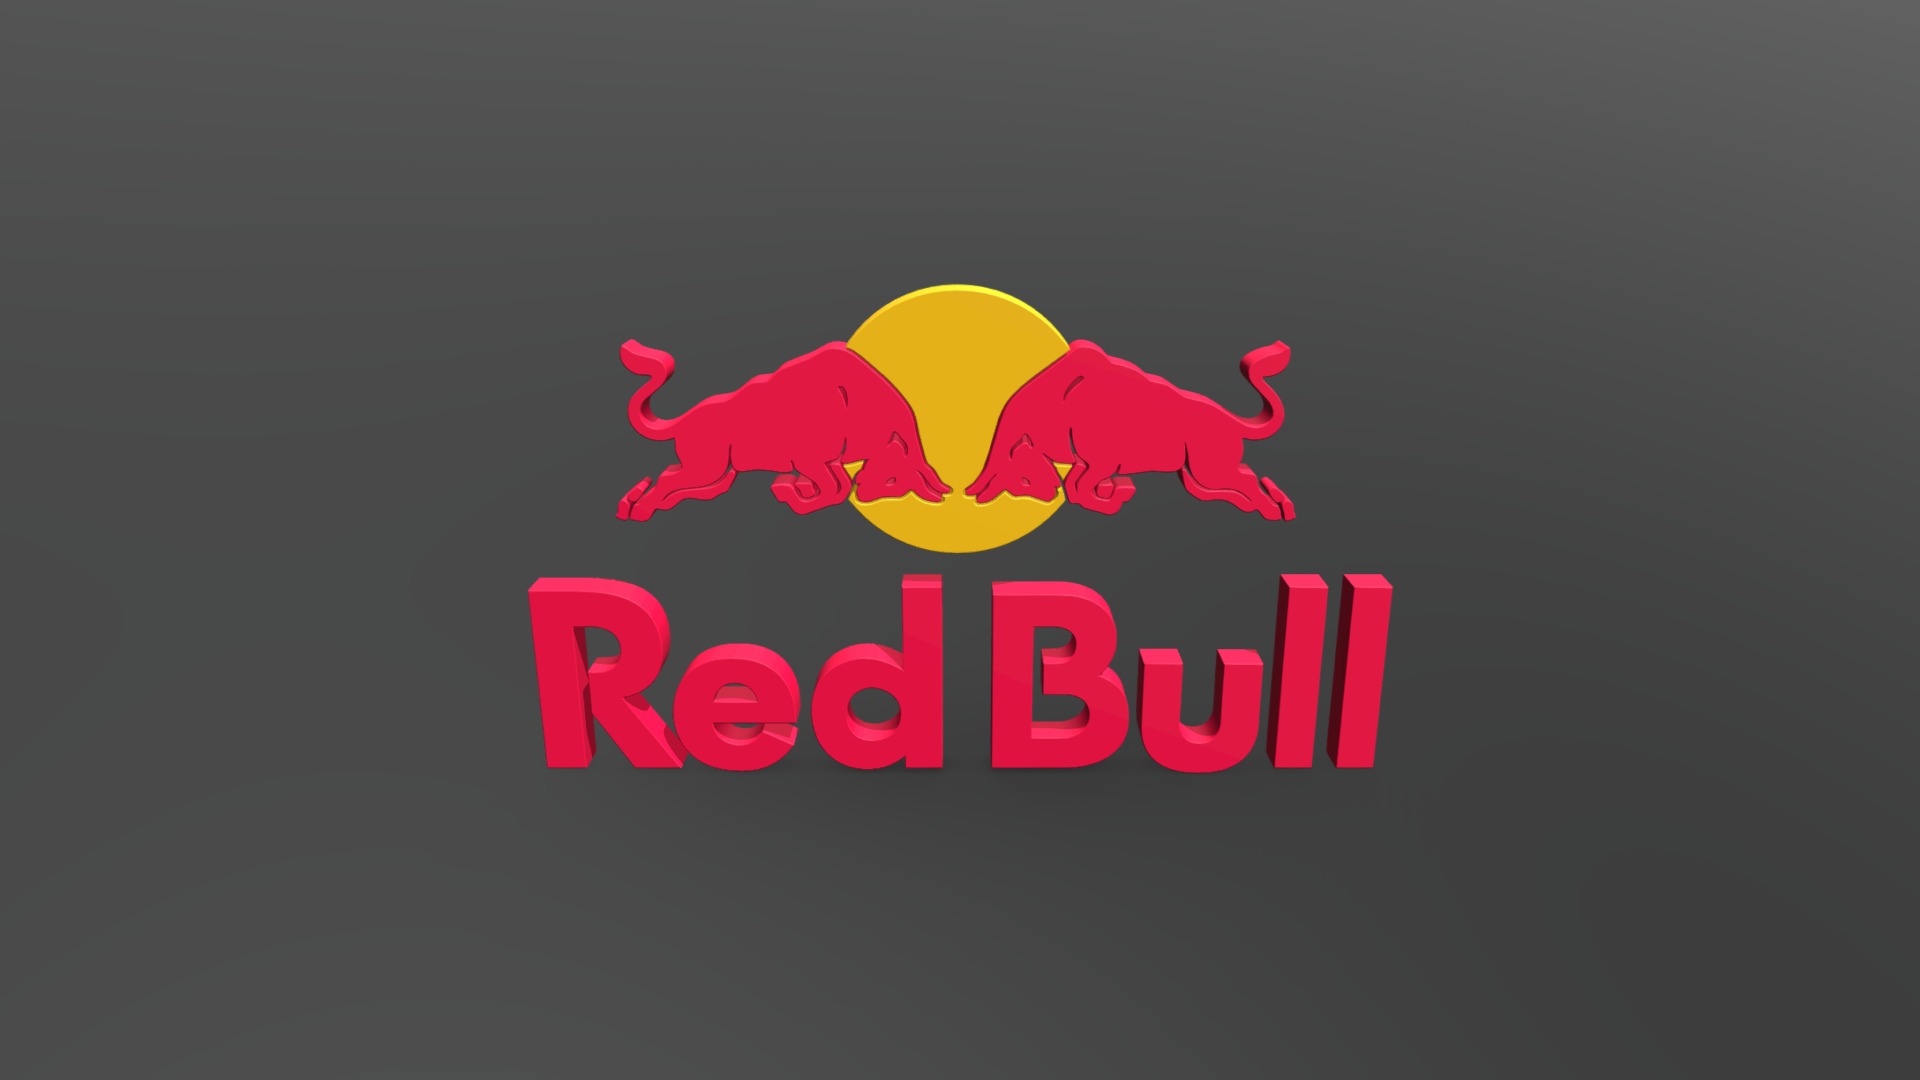 Redbull - Download Free 3D model by 100PUB [1f545da] - Sketchfab